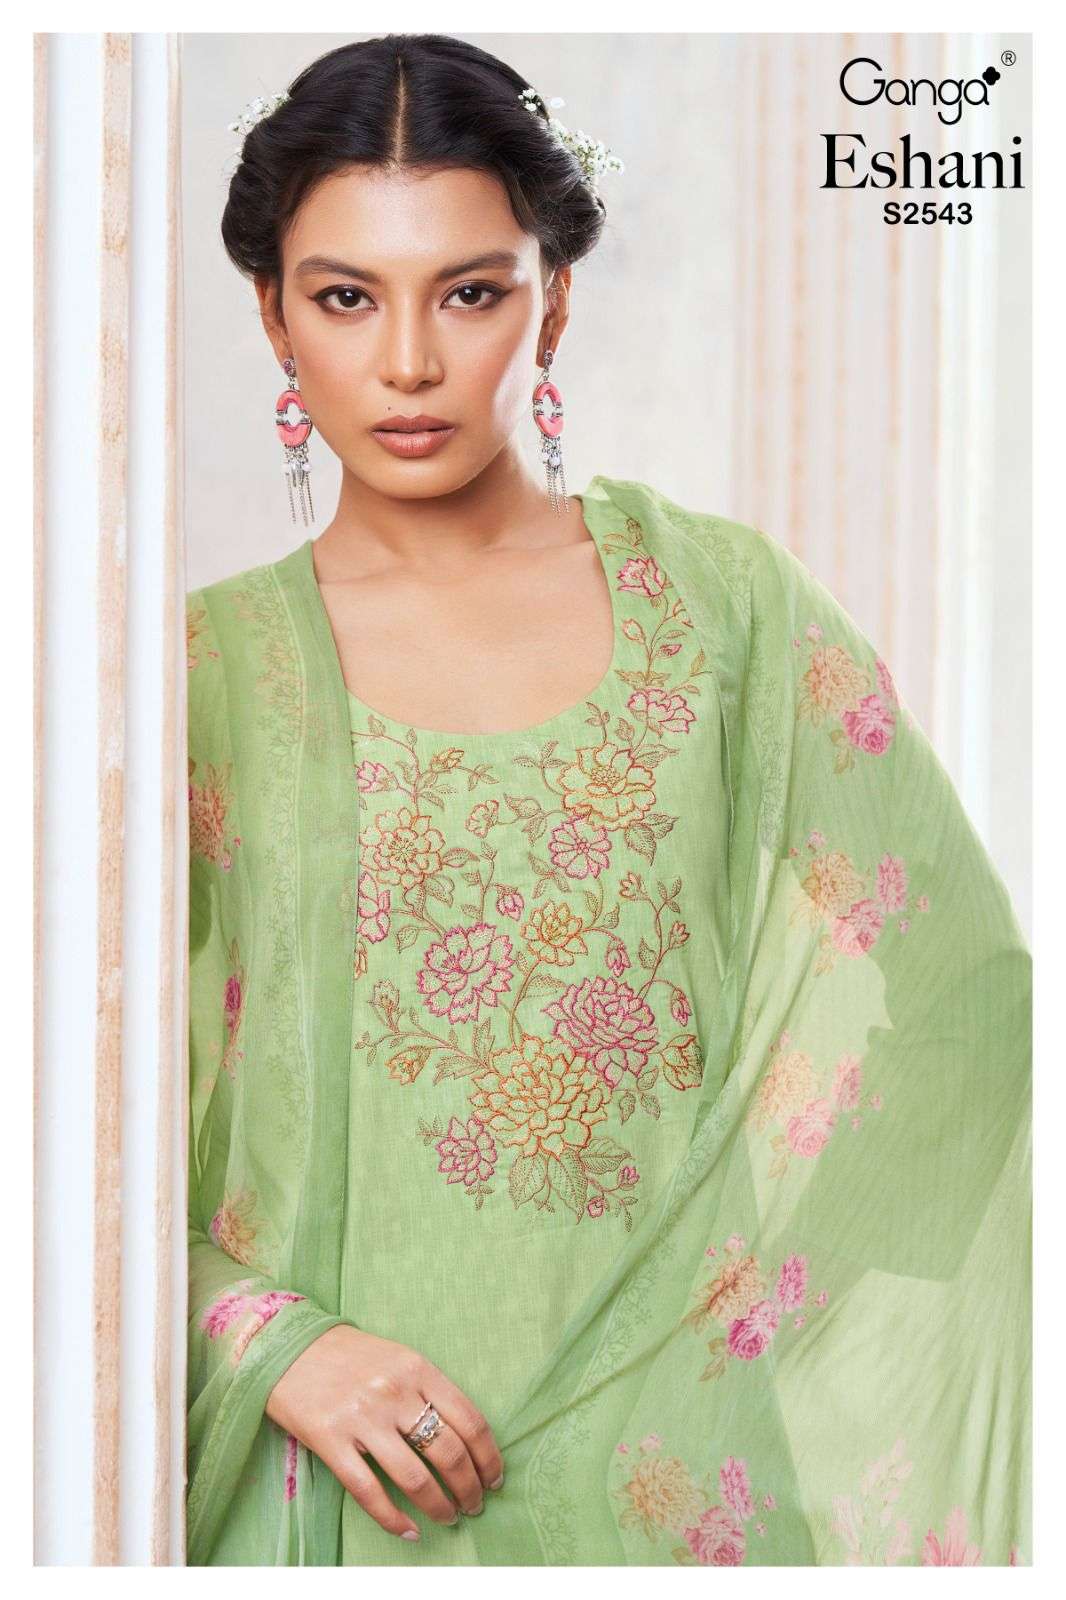 Ganga Eshani 2543 Fancy Cotton Unstitch Suit Catalog New Designs